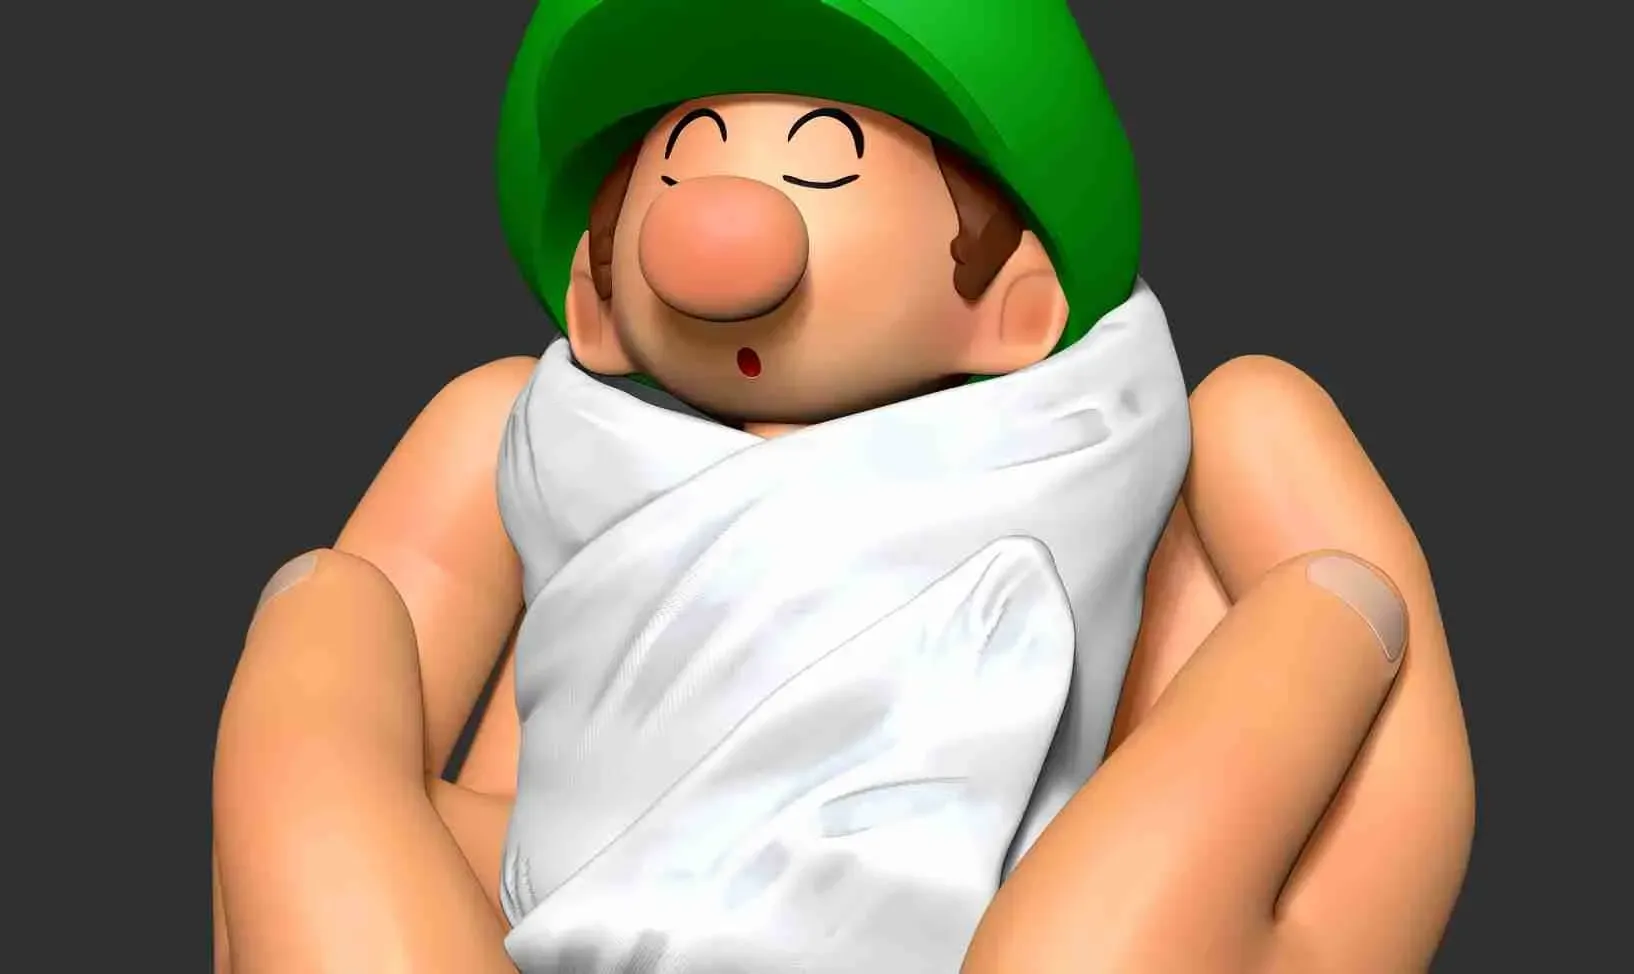 Cuddling Baby Luigi